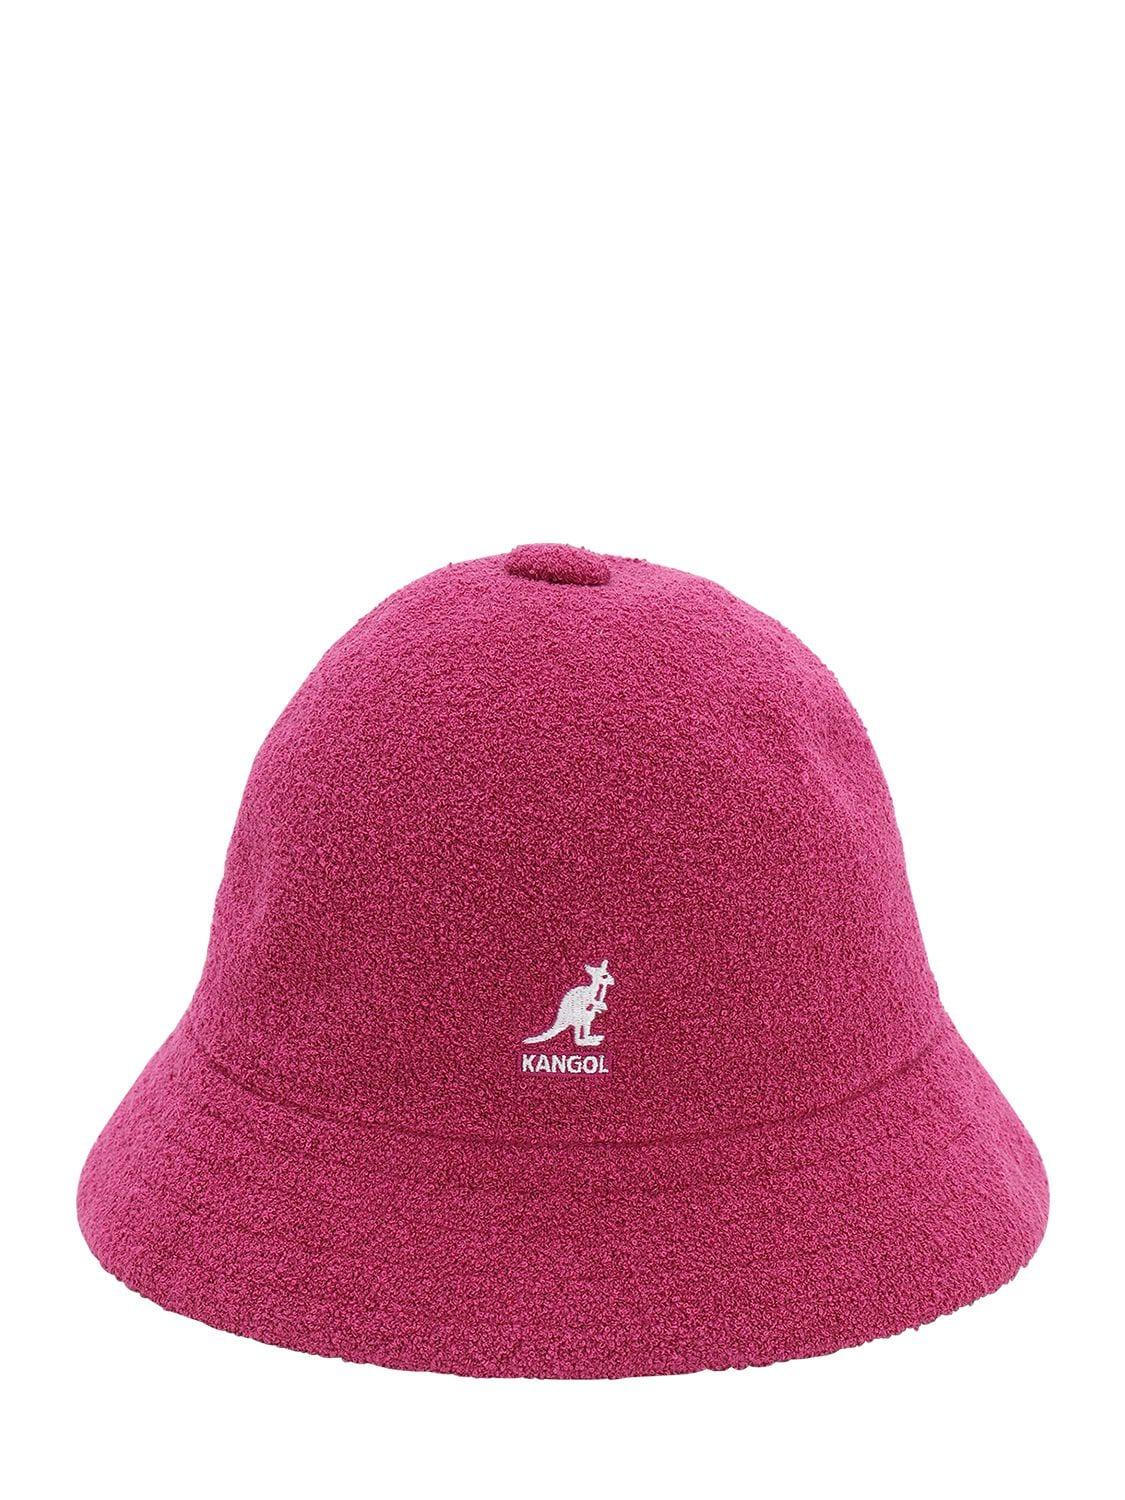 Kangol Bermuda Casual Bucket Hat in Purple for Men - Lyst